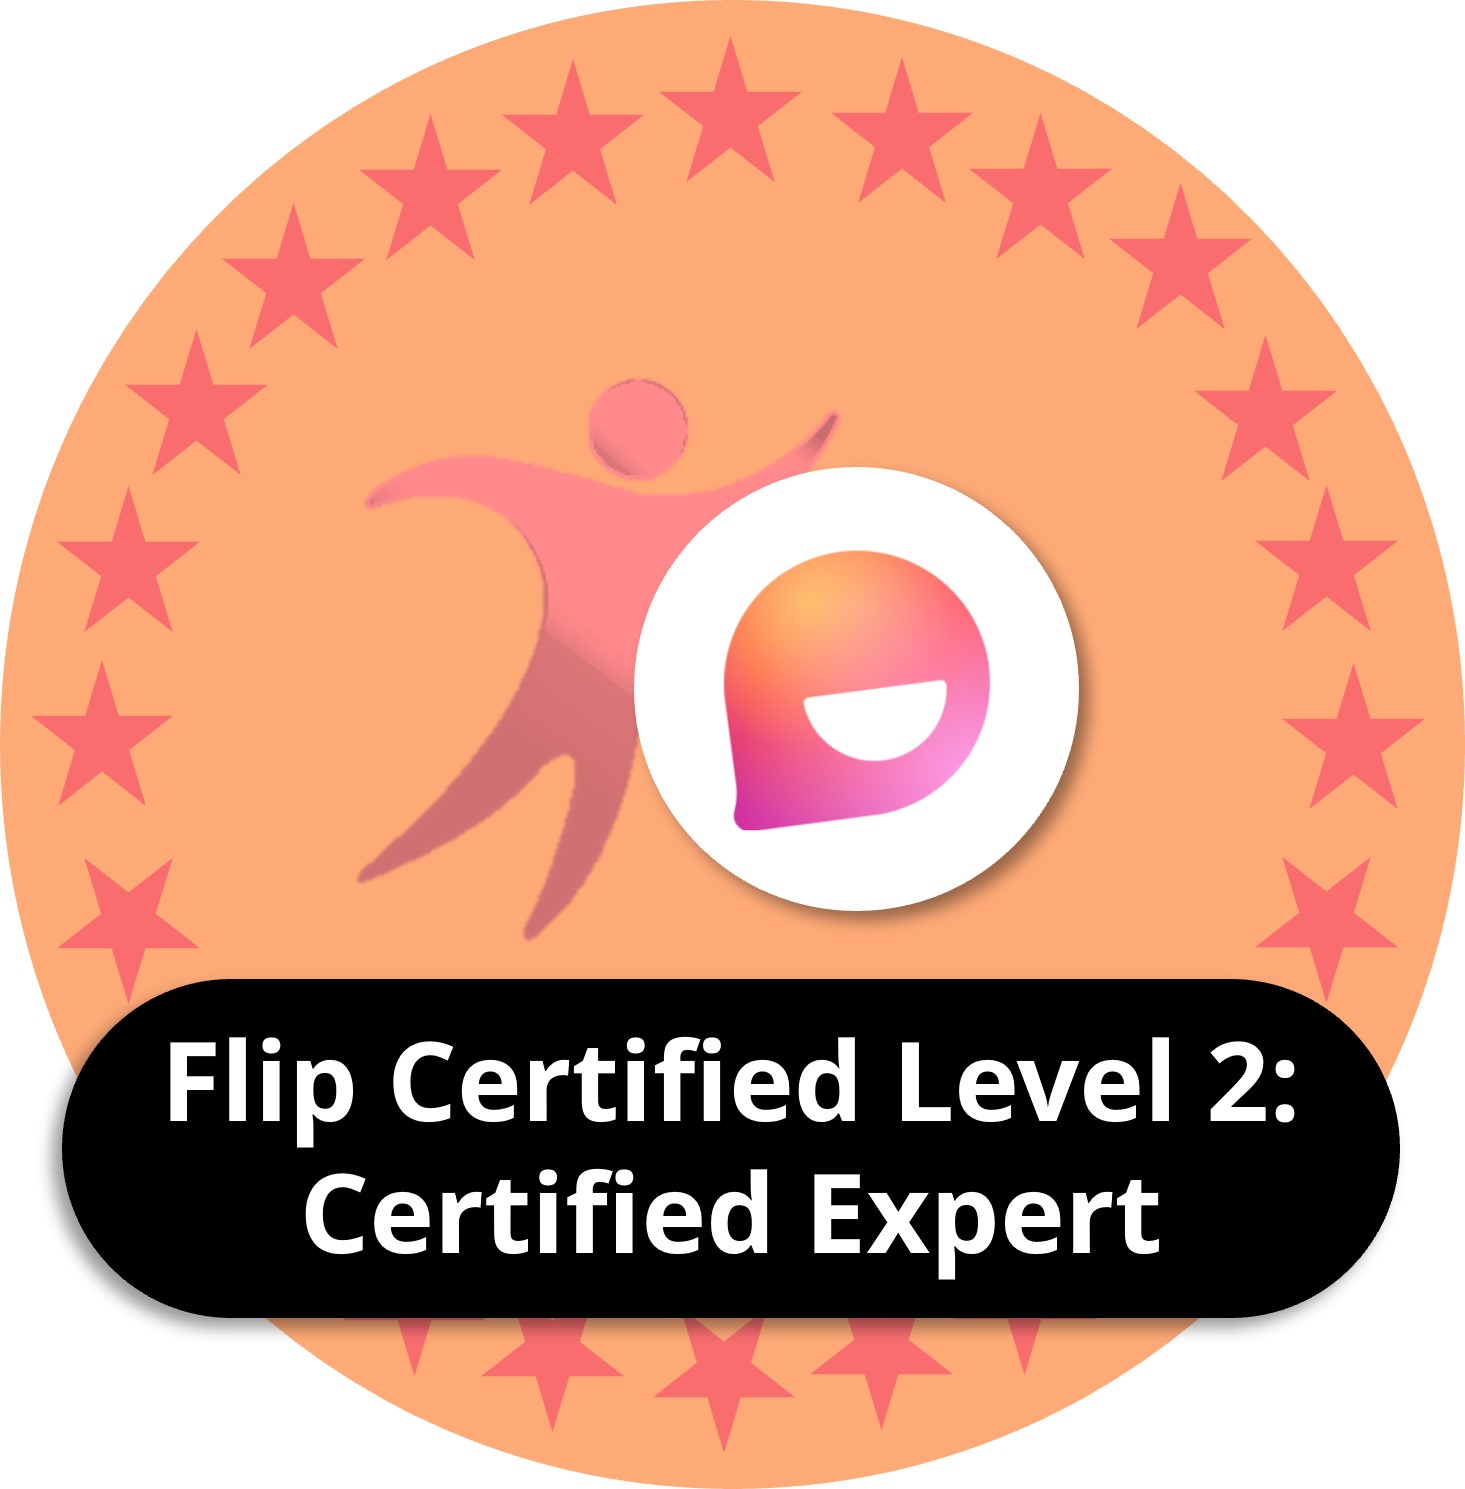 Flip certified level 2: Certified expert